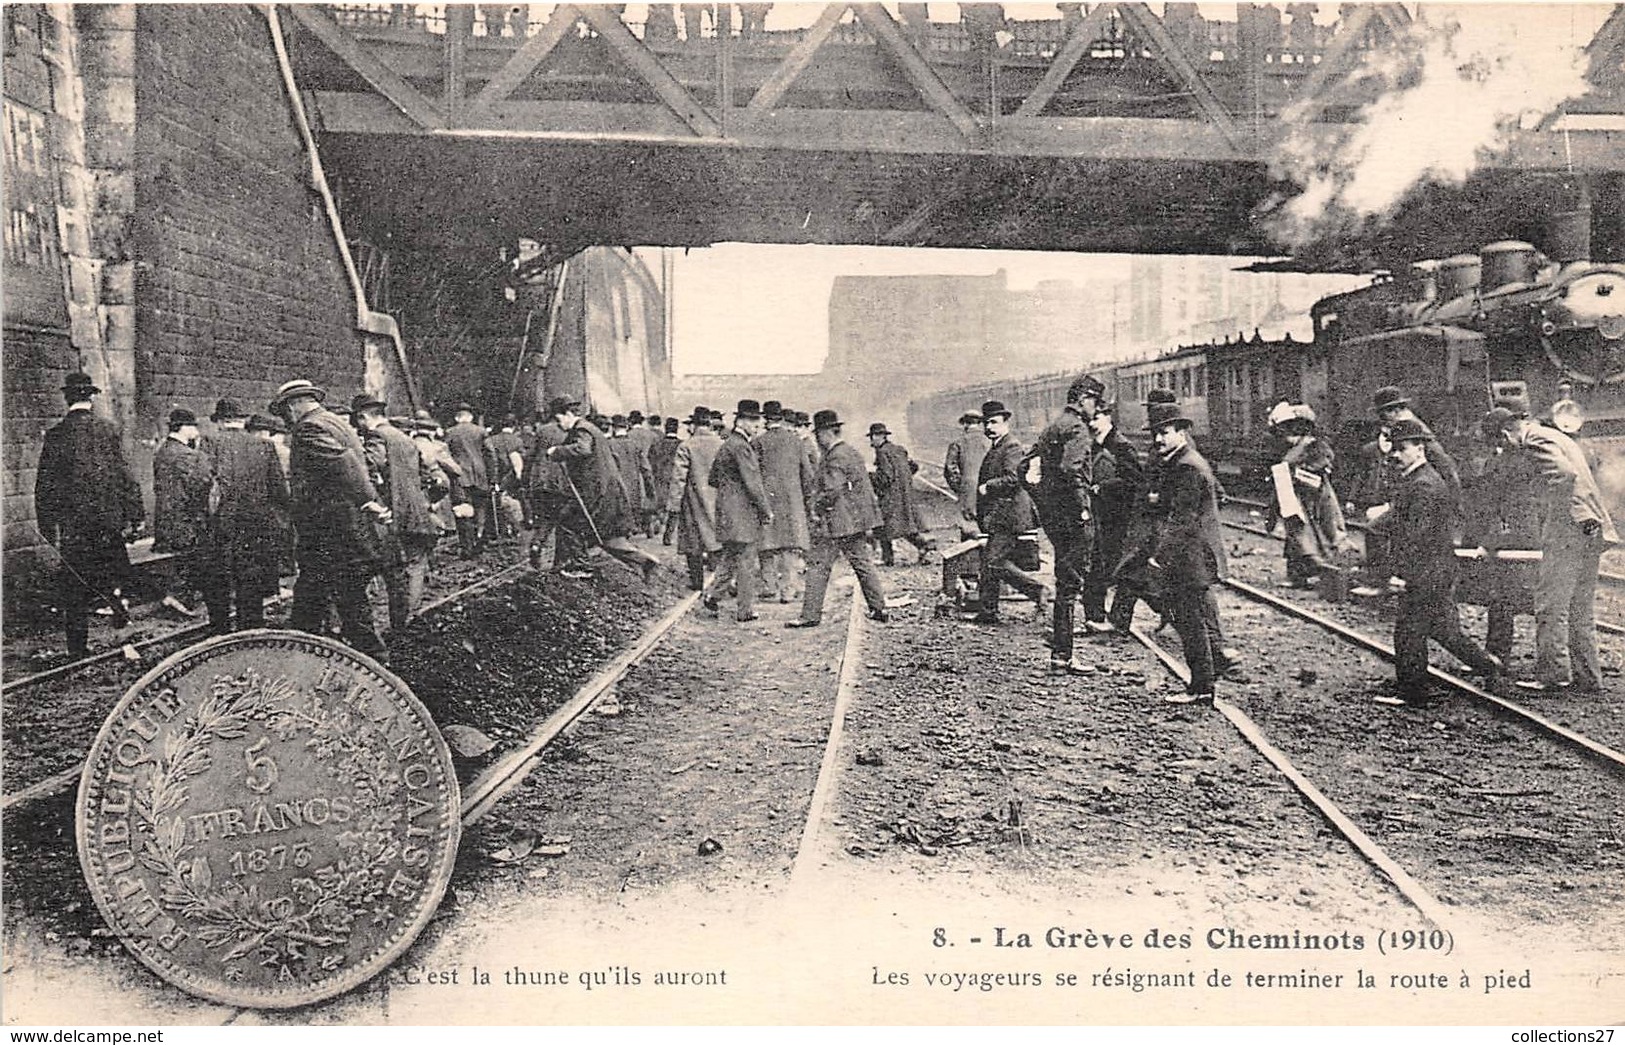 GREVE DES CHEMINOTS DU NORD 1910, LES VOYAGEURS SE RESIGNANT DE TERMINER LA ROUTE A PIED - Stations, Underground